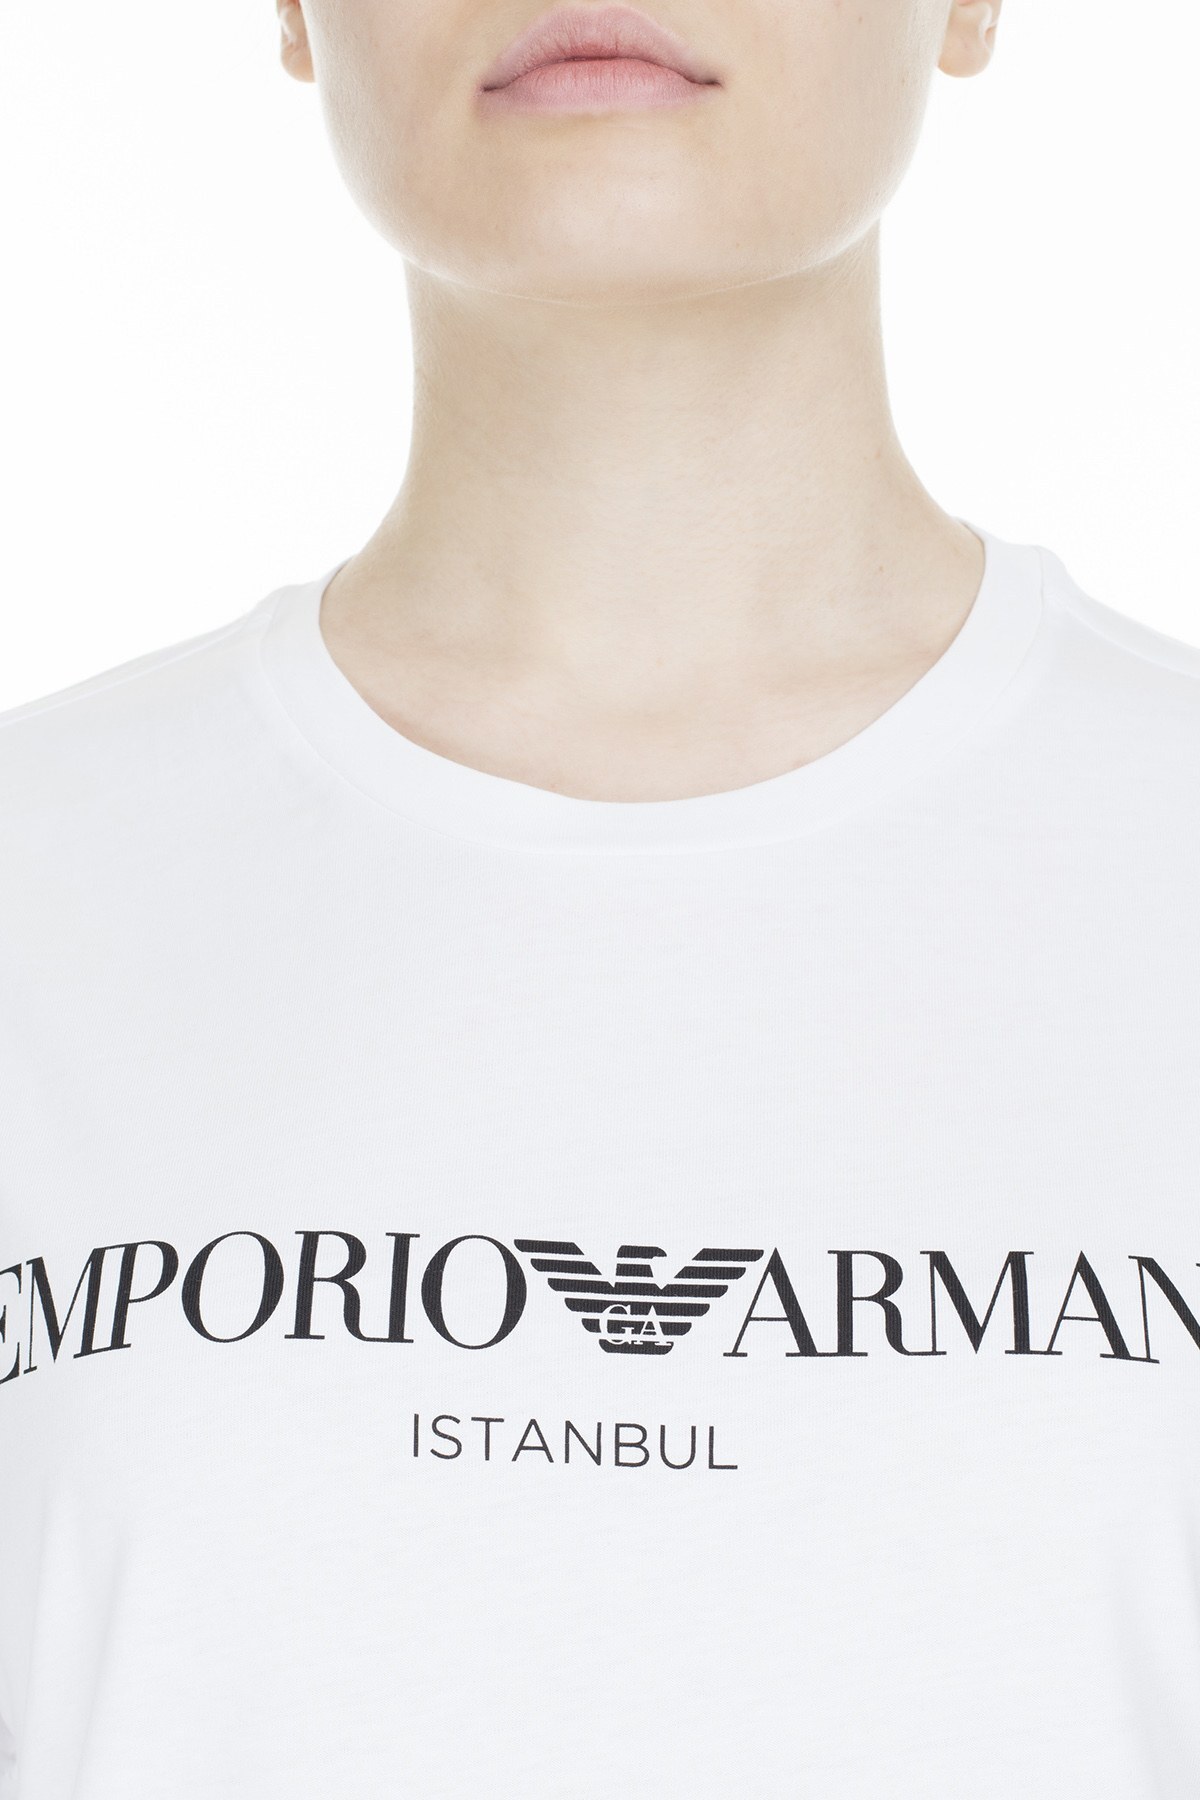 EMPORIO ARMANI T SHIRT Kadın T Shirt 3Z2T7Q 2JO4Z S121 BEYAZ